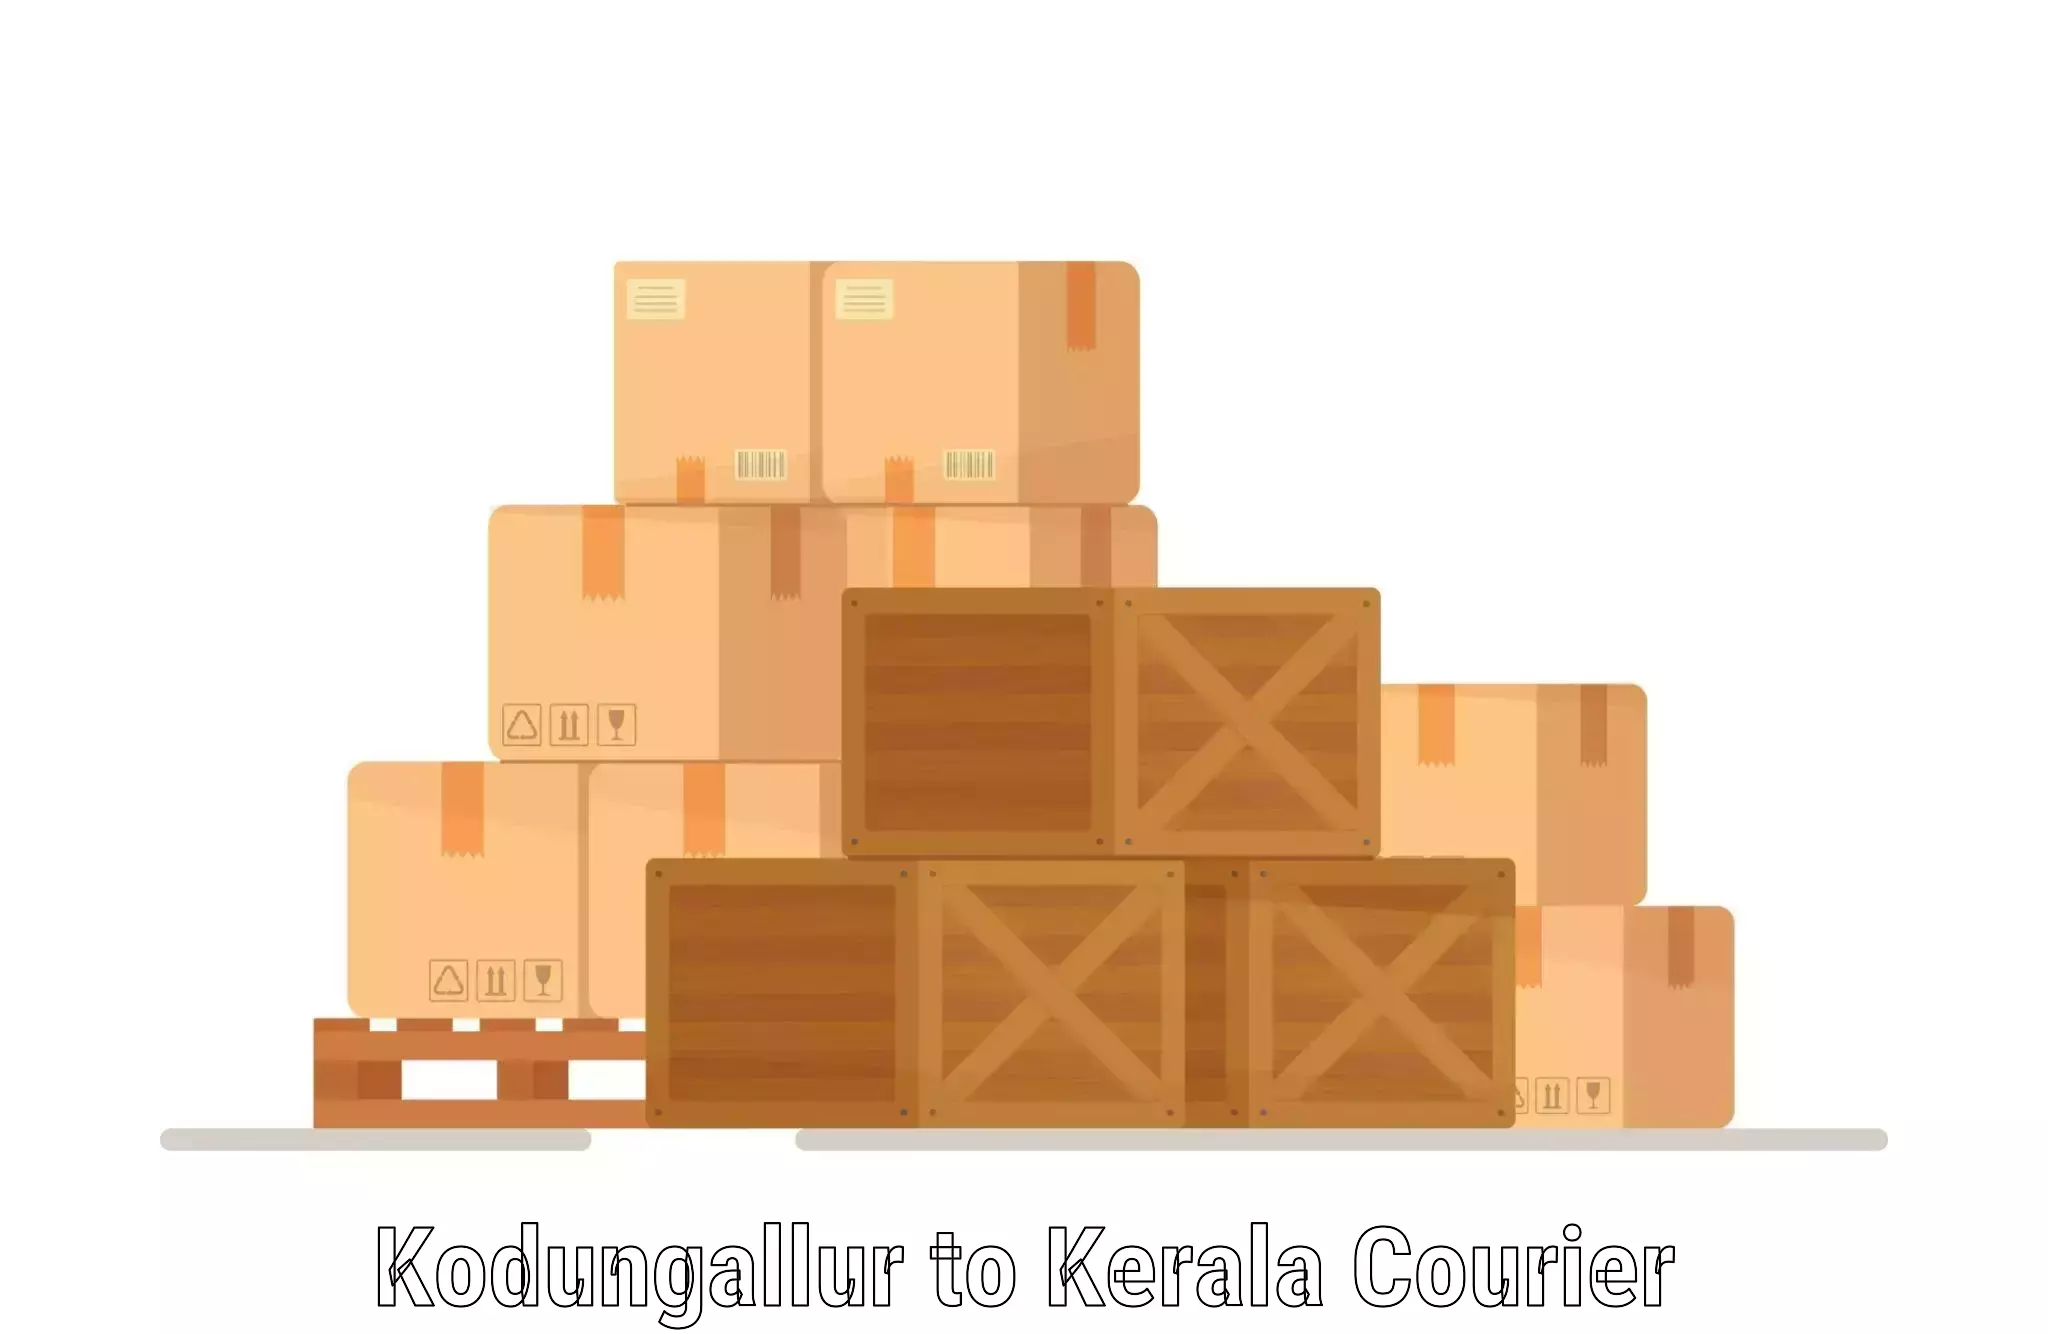 Cost-effective courier options in Kodungallur to Kallikkad